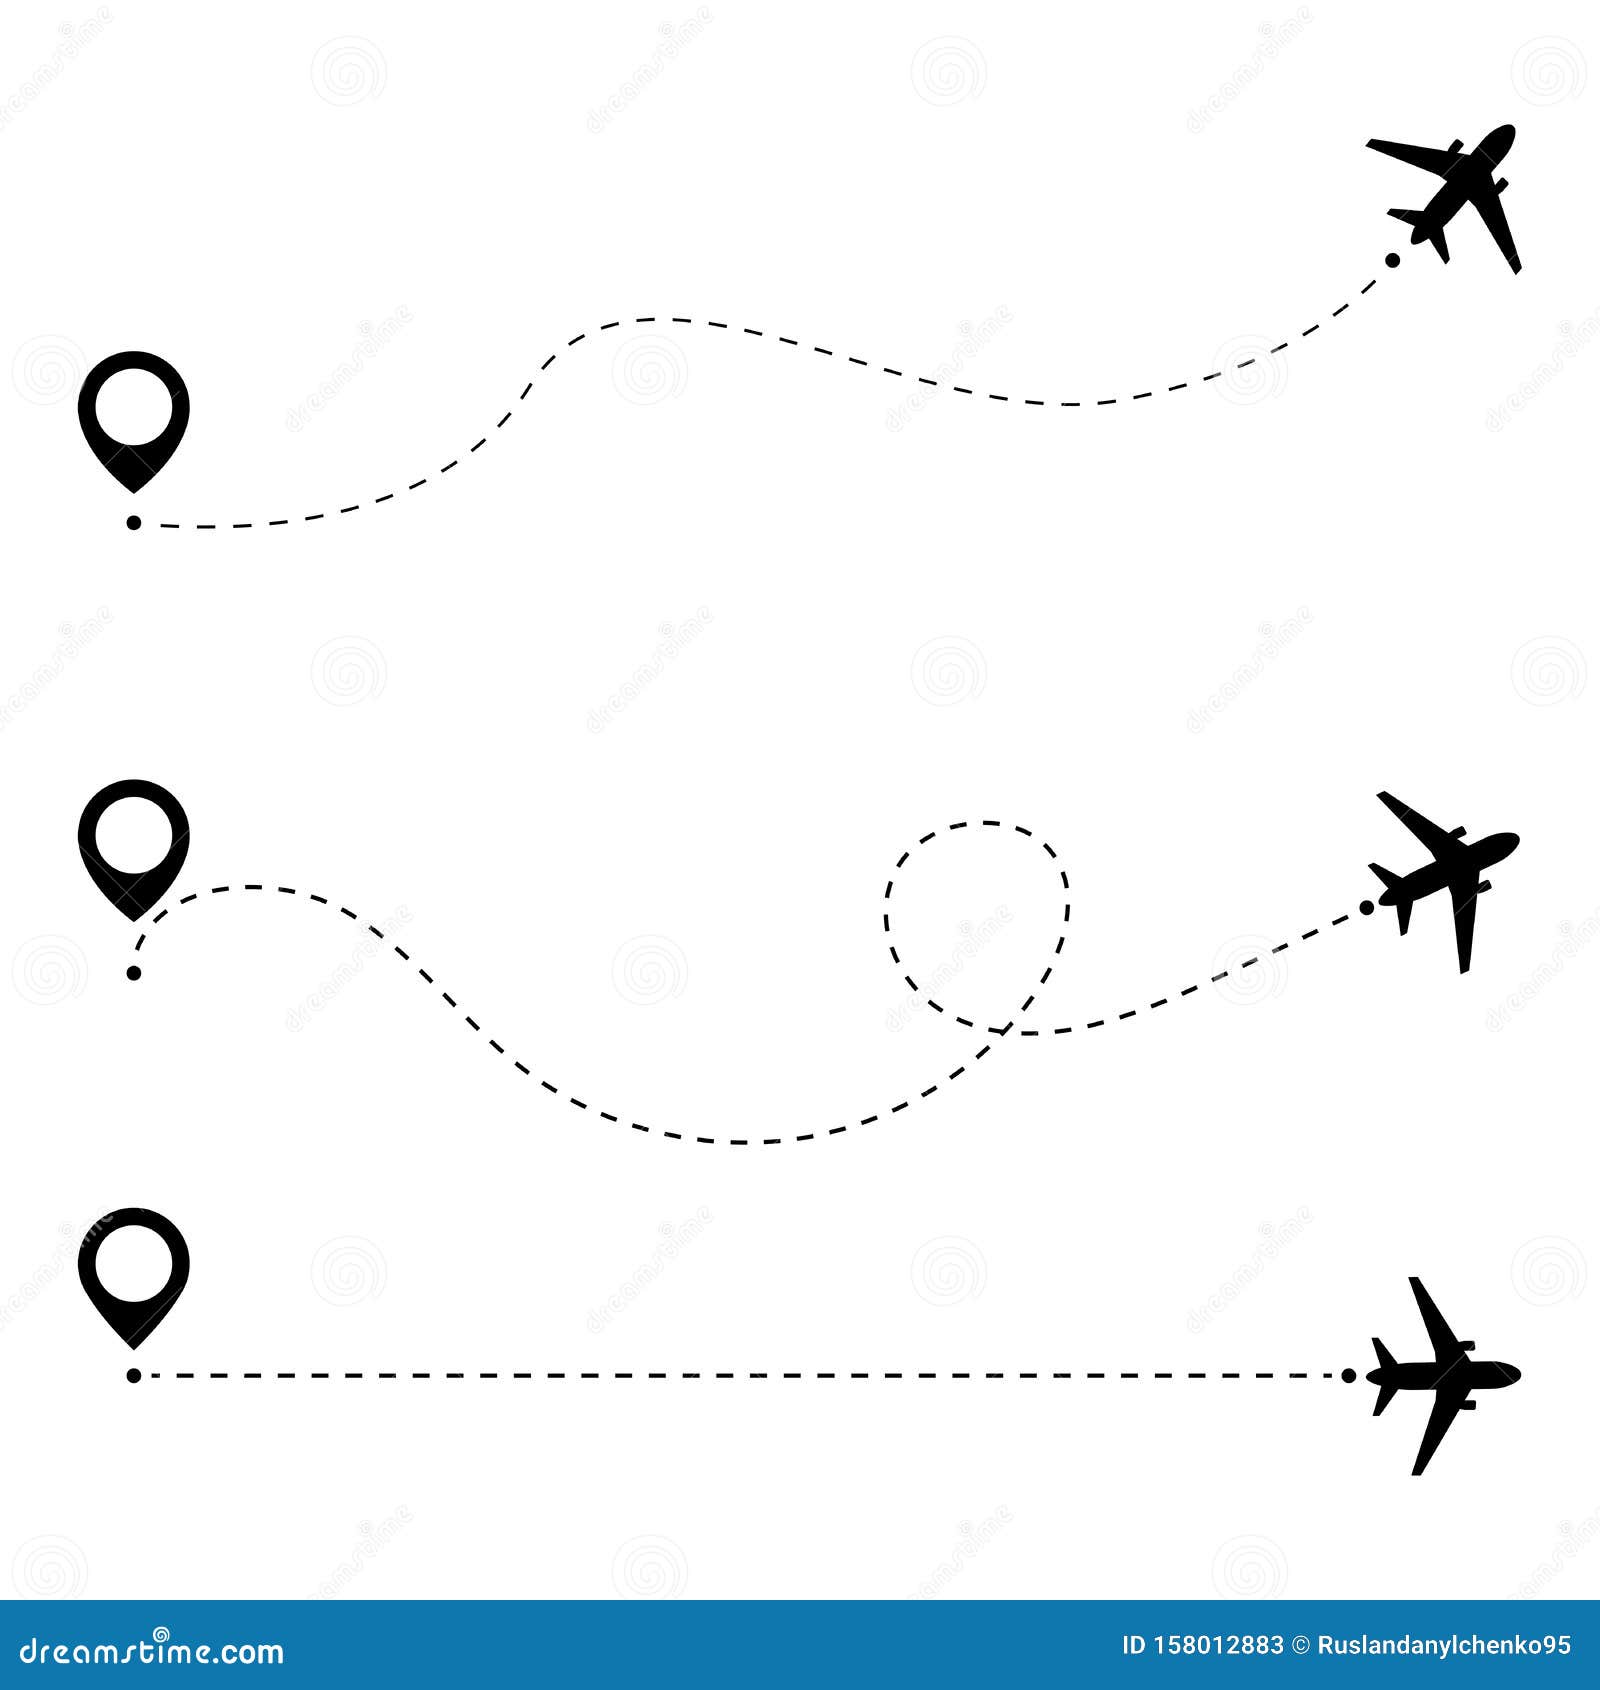 Точка пунктир какой. Пунктирная линия. Самолет с пунктирной линией. Рисунок самолётик с пунктиром. Пунктирная линия с самолетиком.